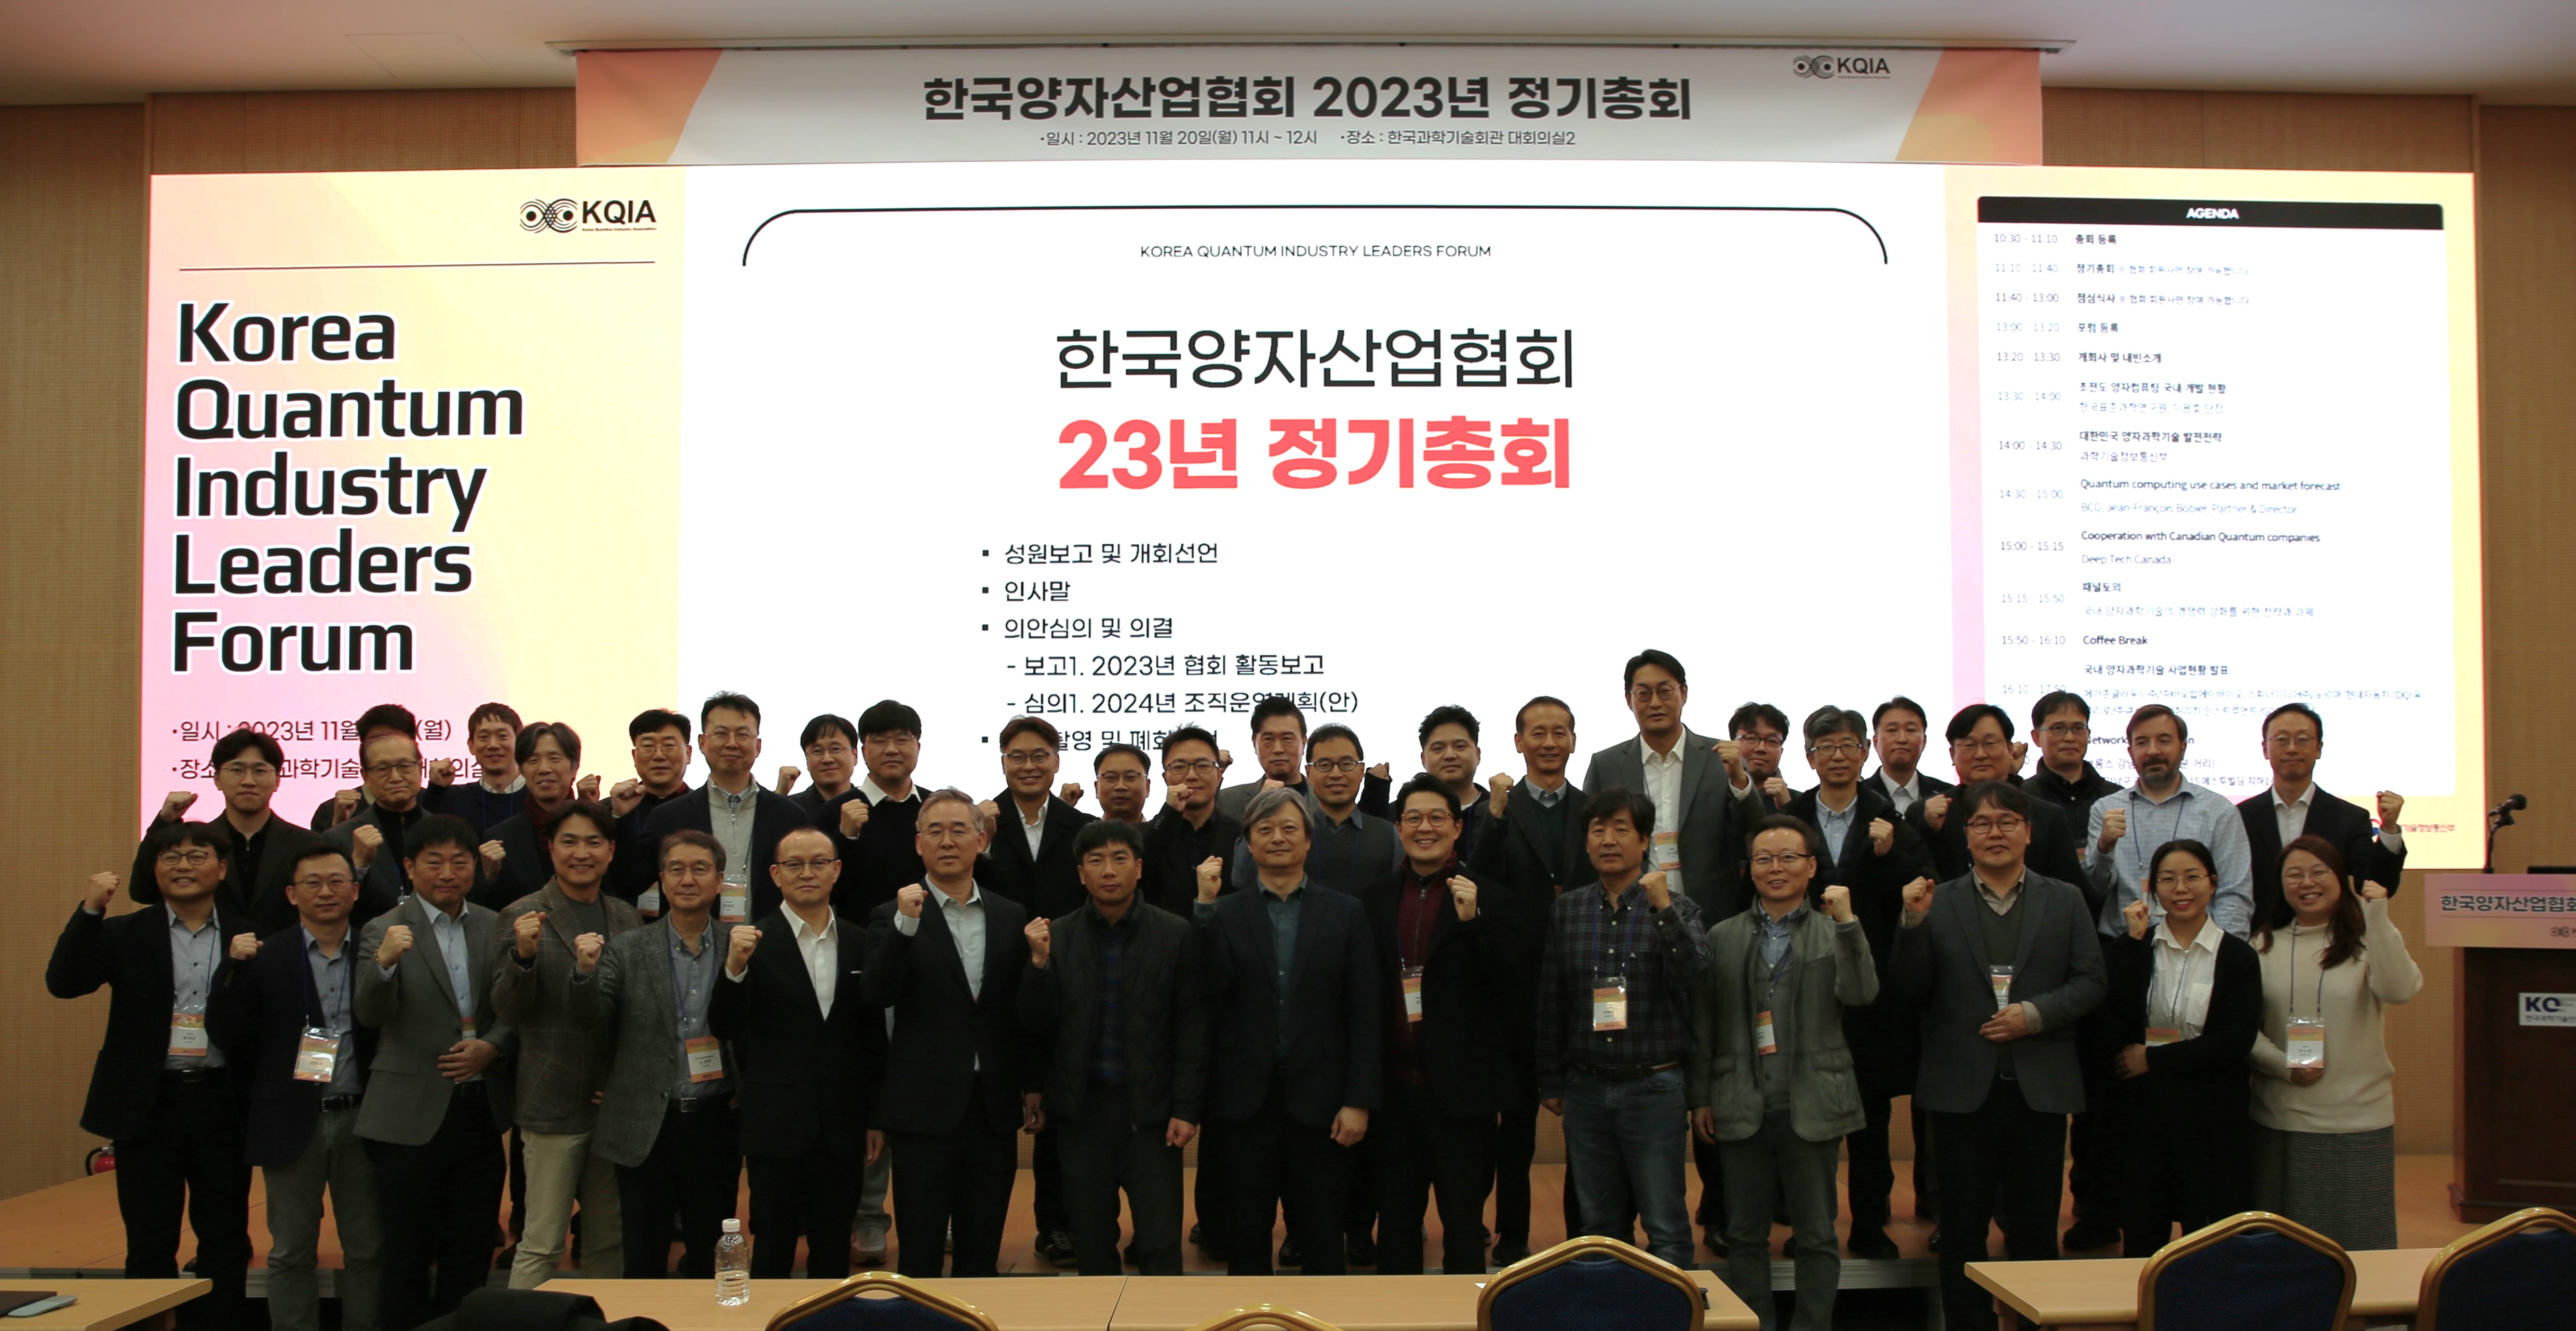 양자과학기술산업 혁신을 위한 협력과 교류, 한국양자산업리더스포럼 개최